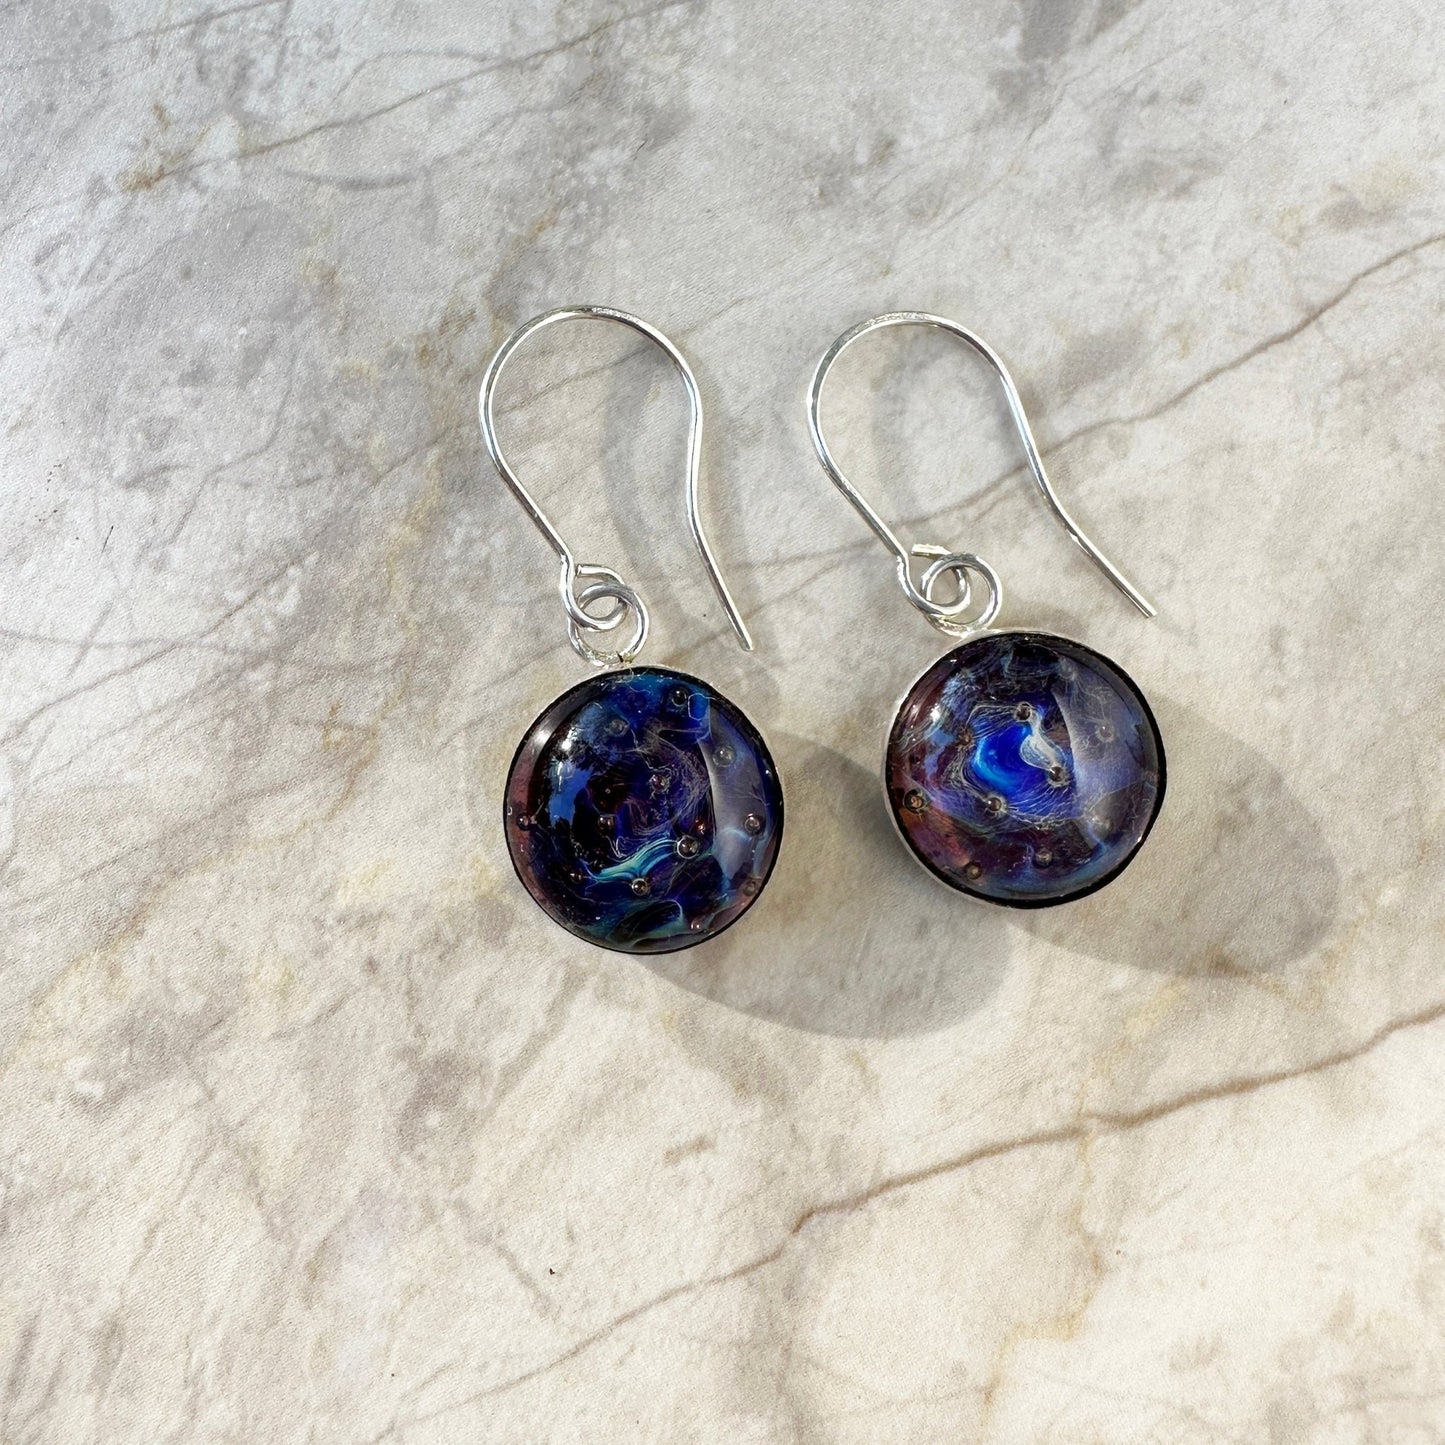 Bezel set glass earrings - The Glass Acorn